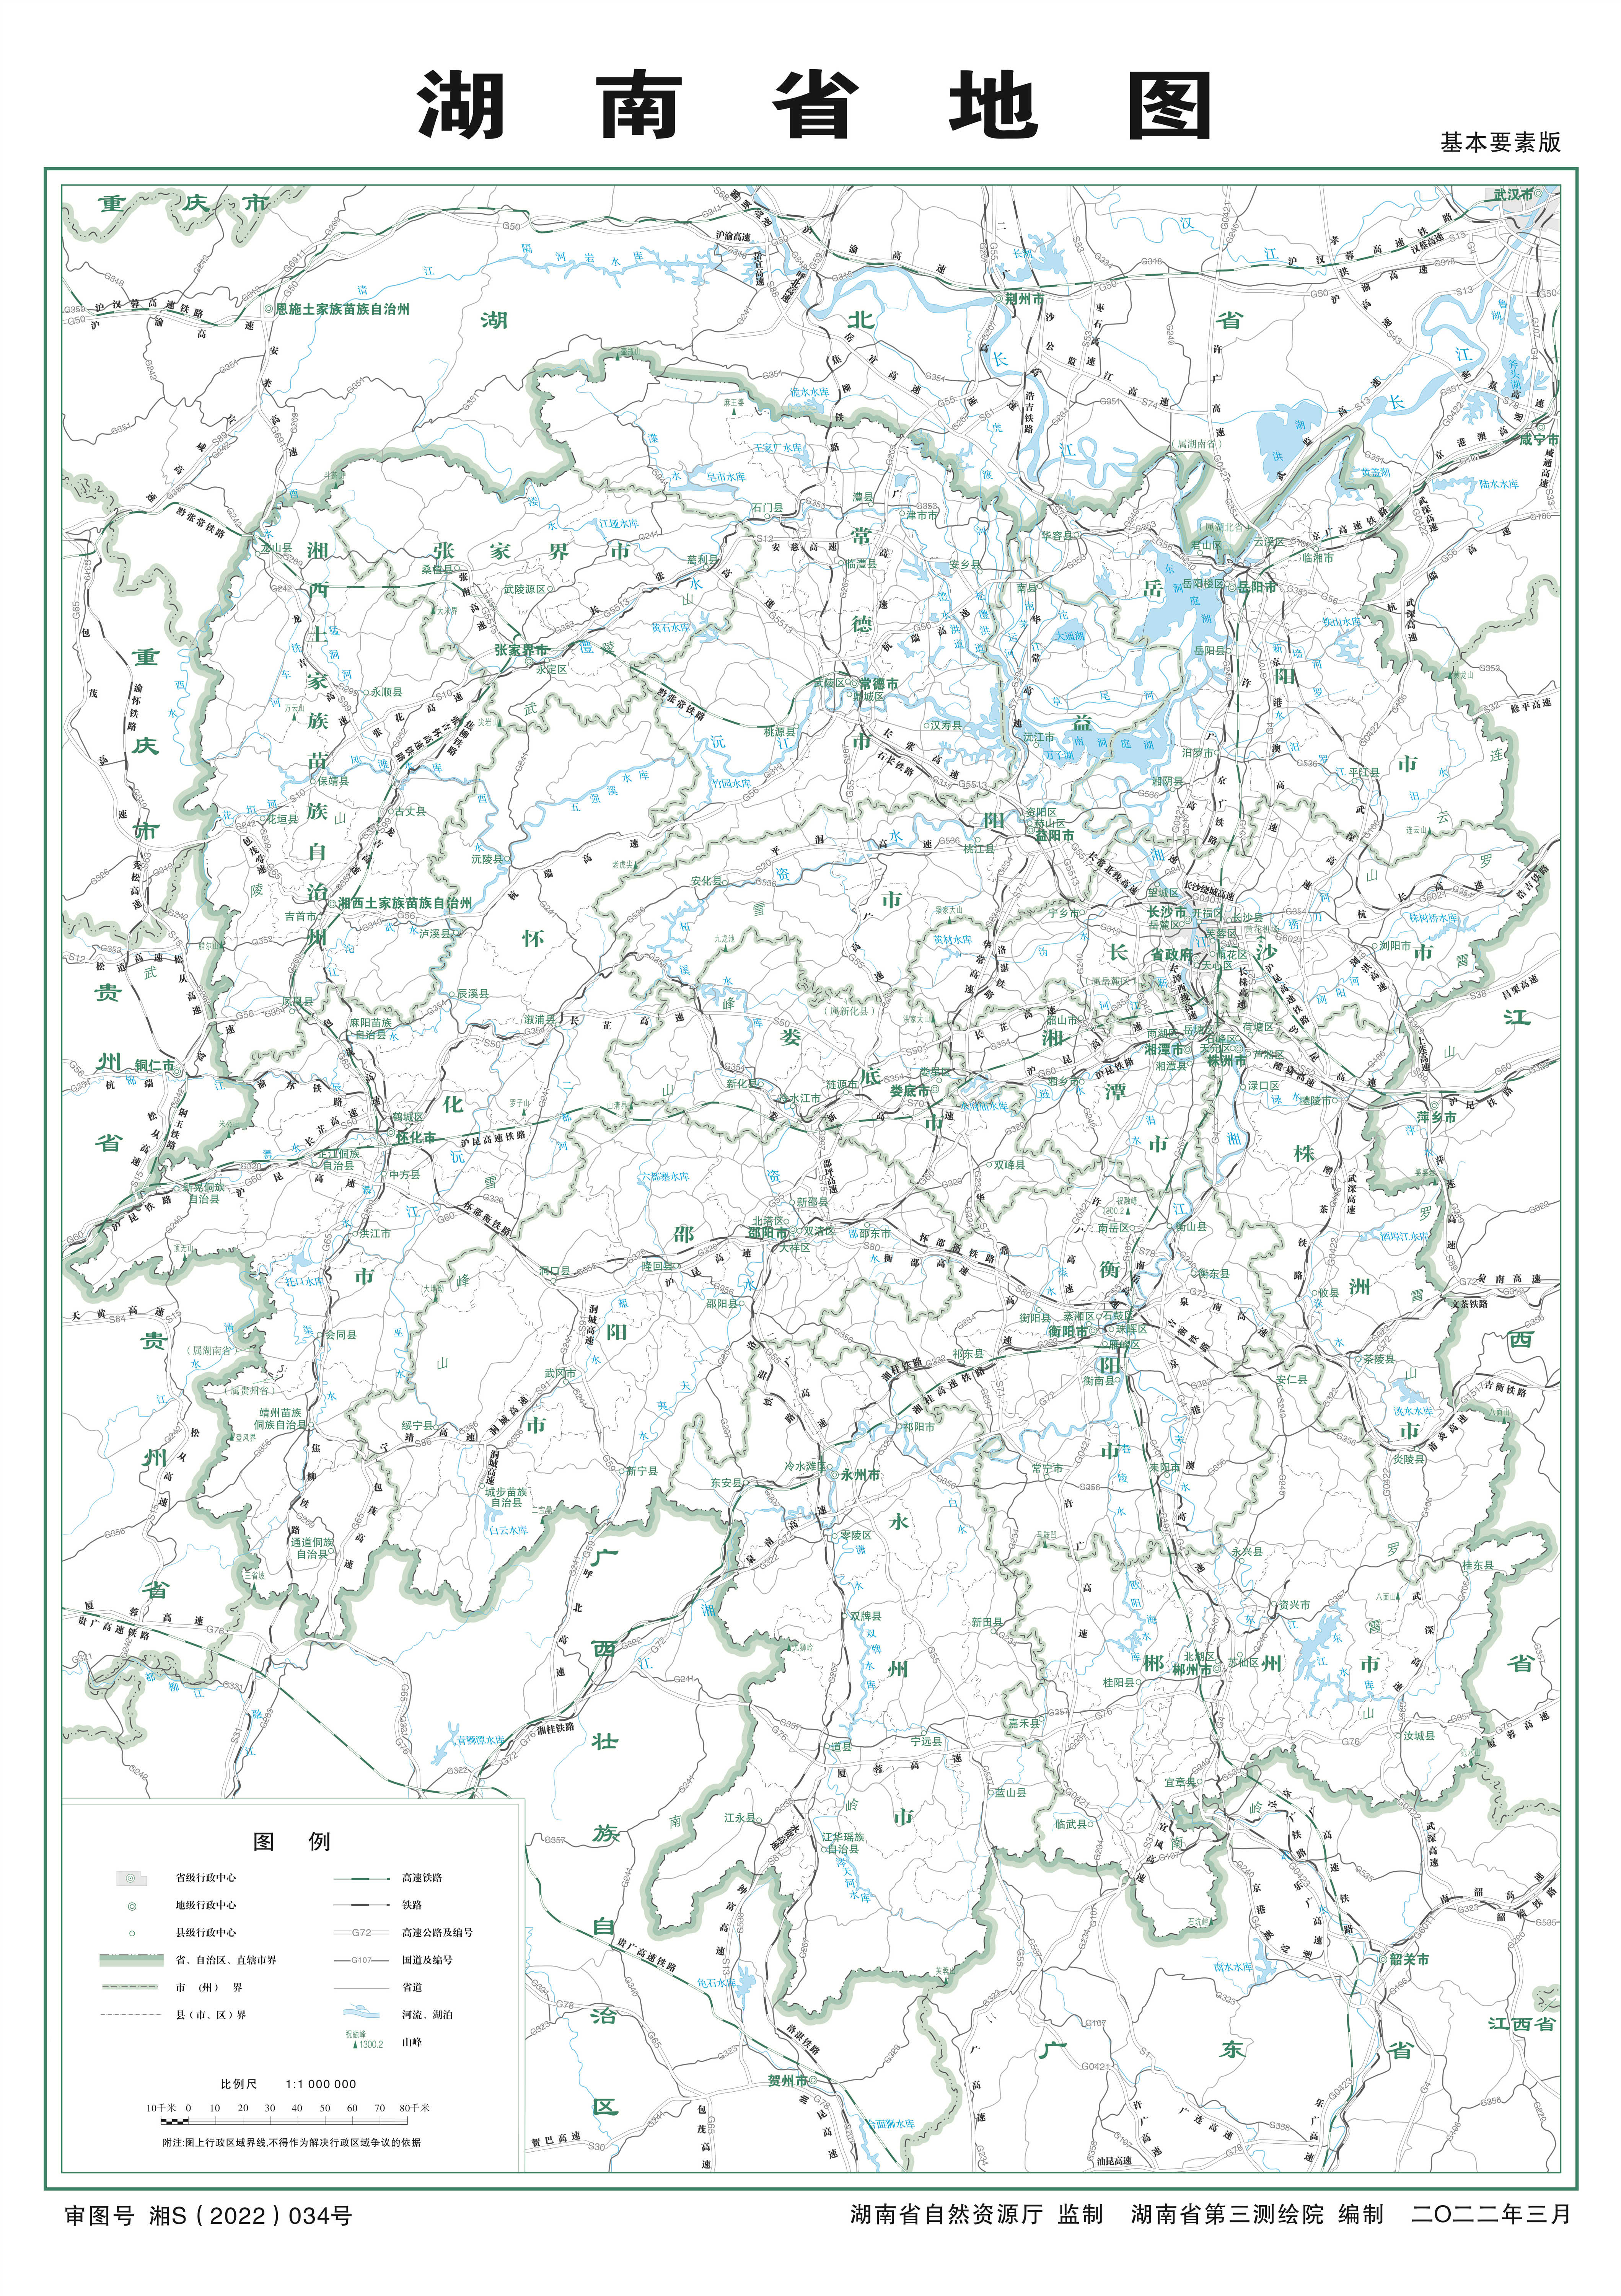 湖南省标准地图基本要素版1：100万。